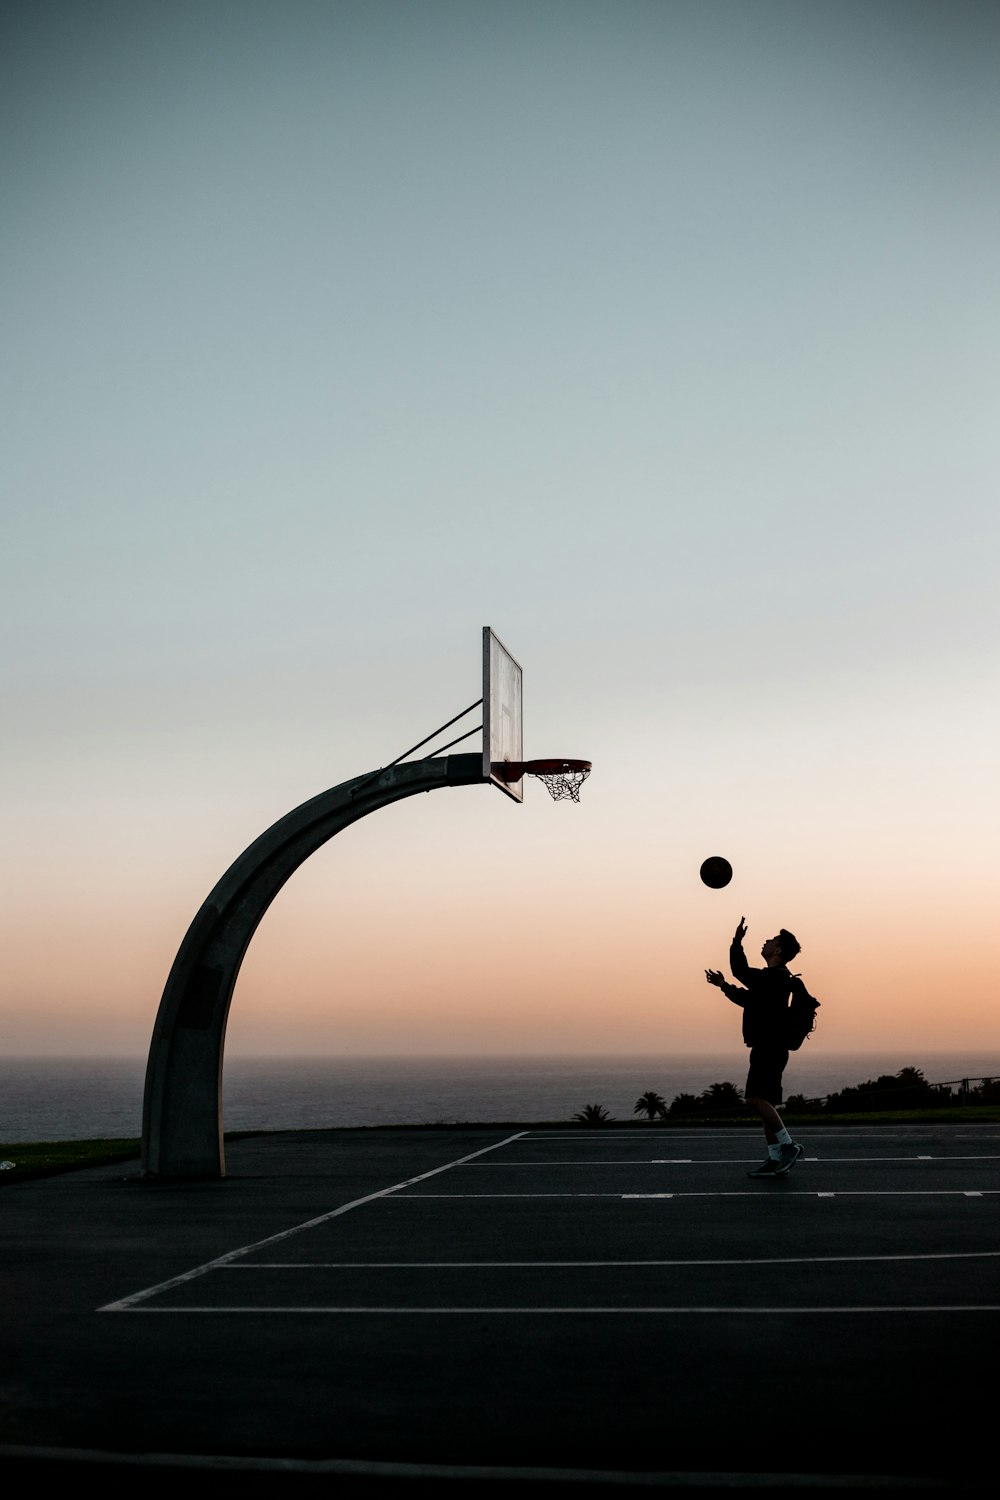 Mann in schwarzer Jacke und Hose beim Basketballspielen bei Sonnenuntergang